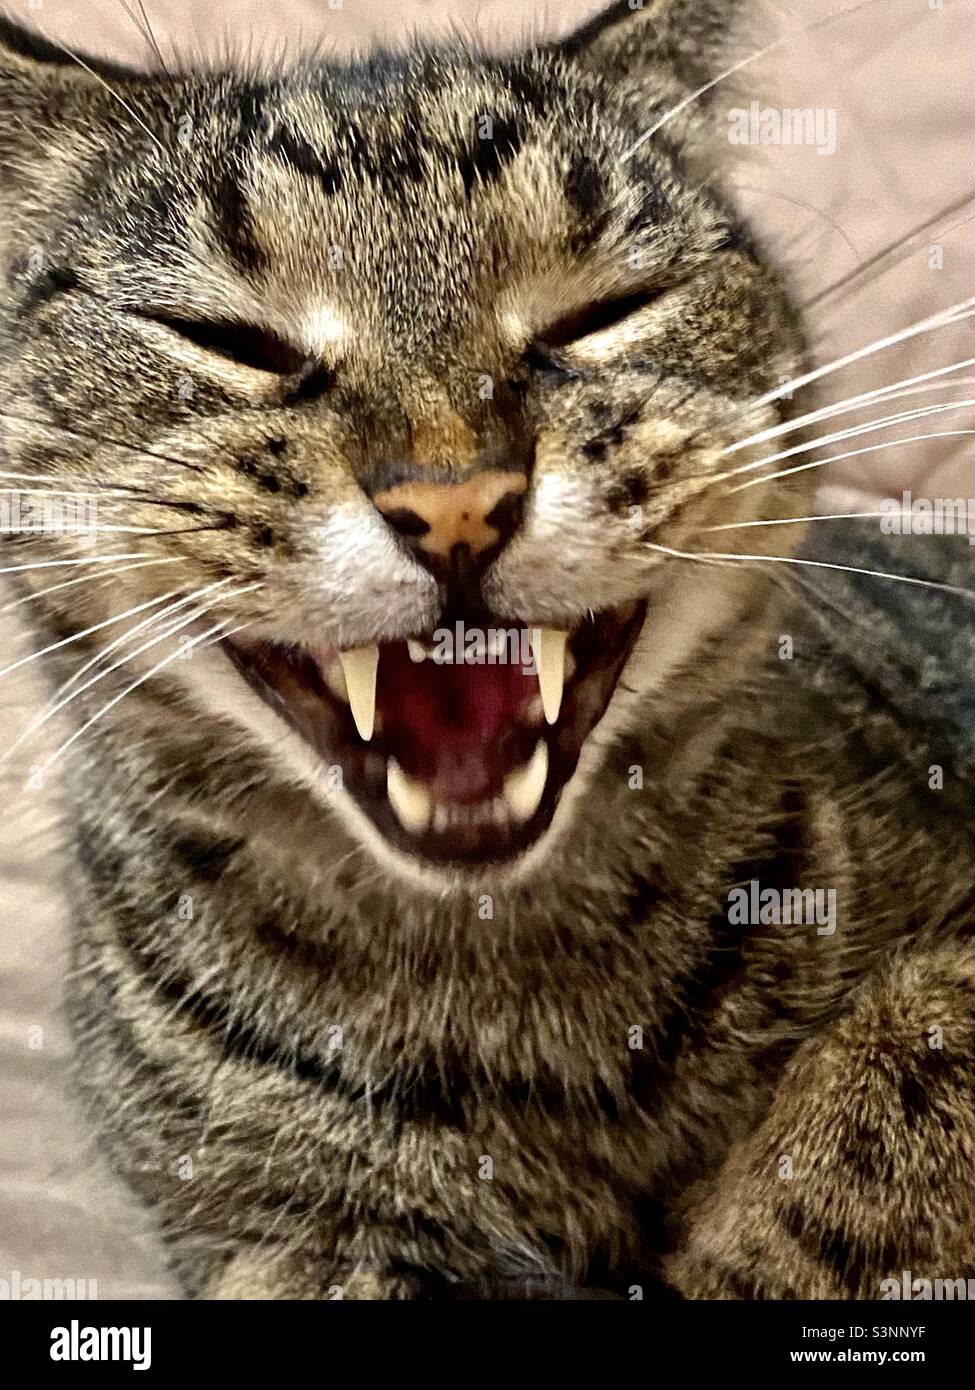 Lächelndes Katzengesicht; Nahaufnahme einer gähnenden grauen gestromten Katze, die Reißzähne und Schnurrhaare zeigt; sieht aus, als ob er lächelt oder lacht, witziges Tiergesicht Stockfoto